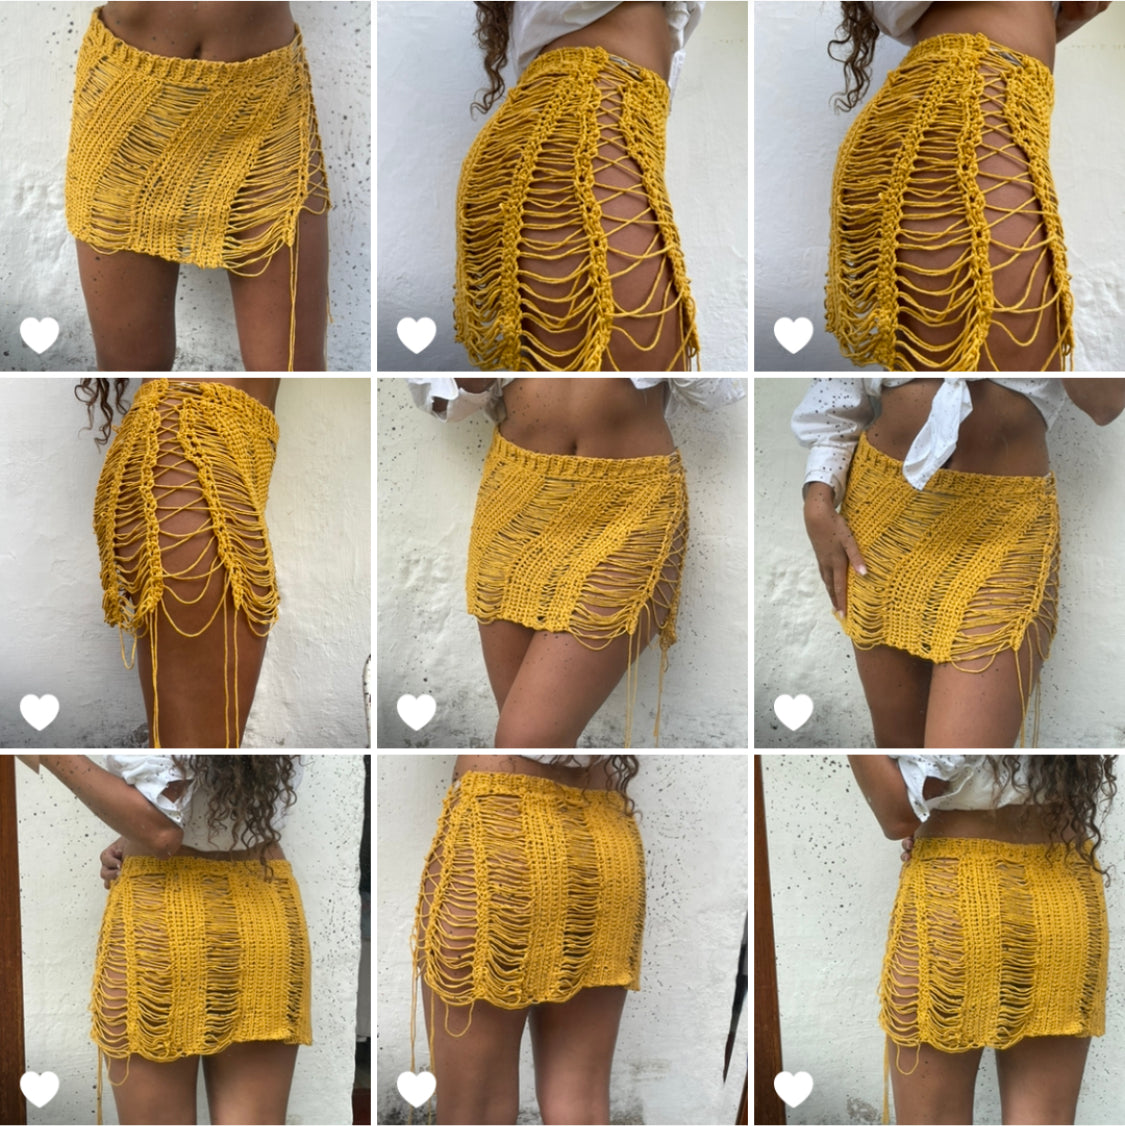 Gold crochet mini skirt